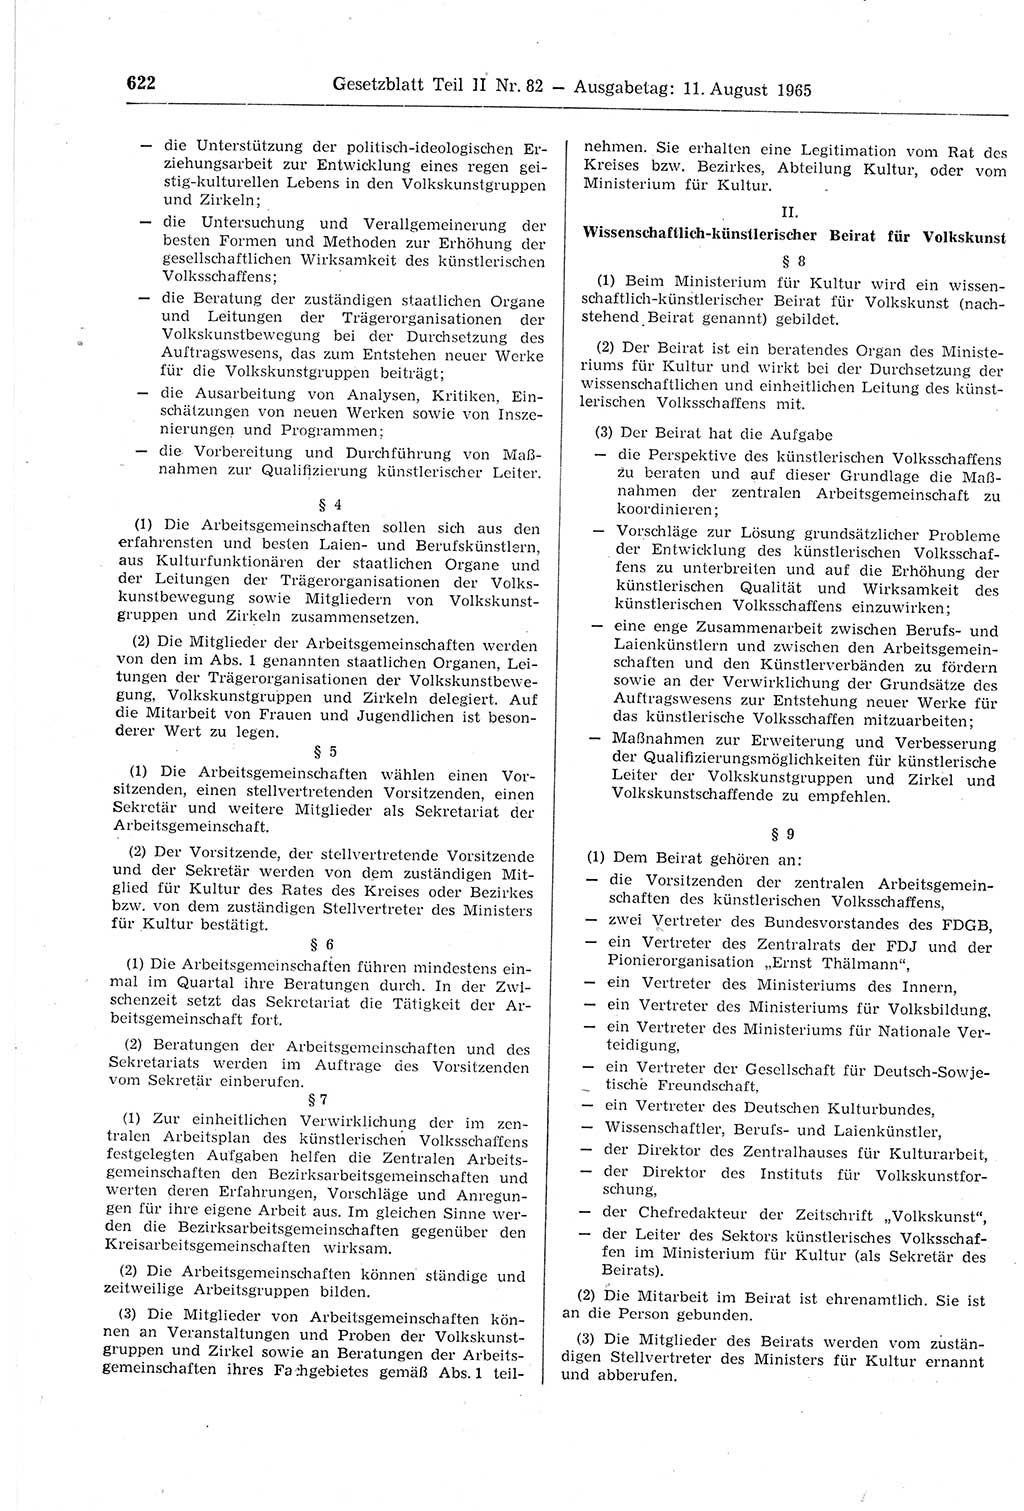 Gesetzblatt (GBl.) der Deutschen Demokratischen Republik (DDR) Teil ⅠⅠ 1965, Seite 622 (GBl. DDR ⅠⅠ 1965, S. 622)